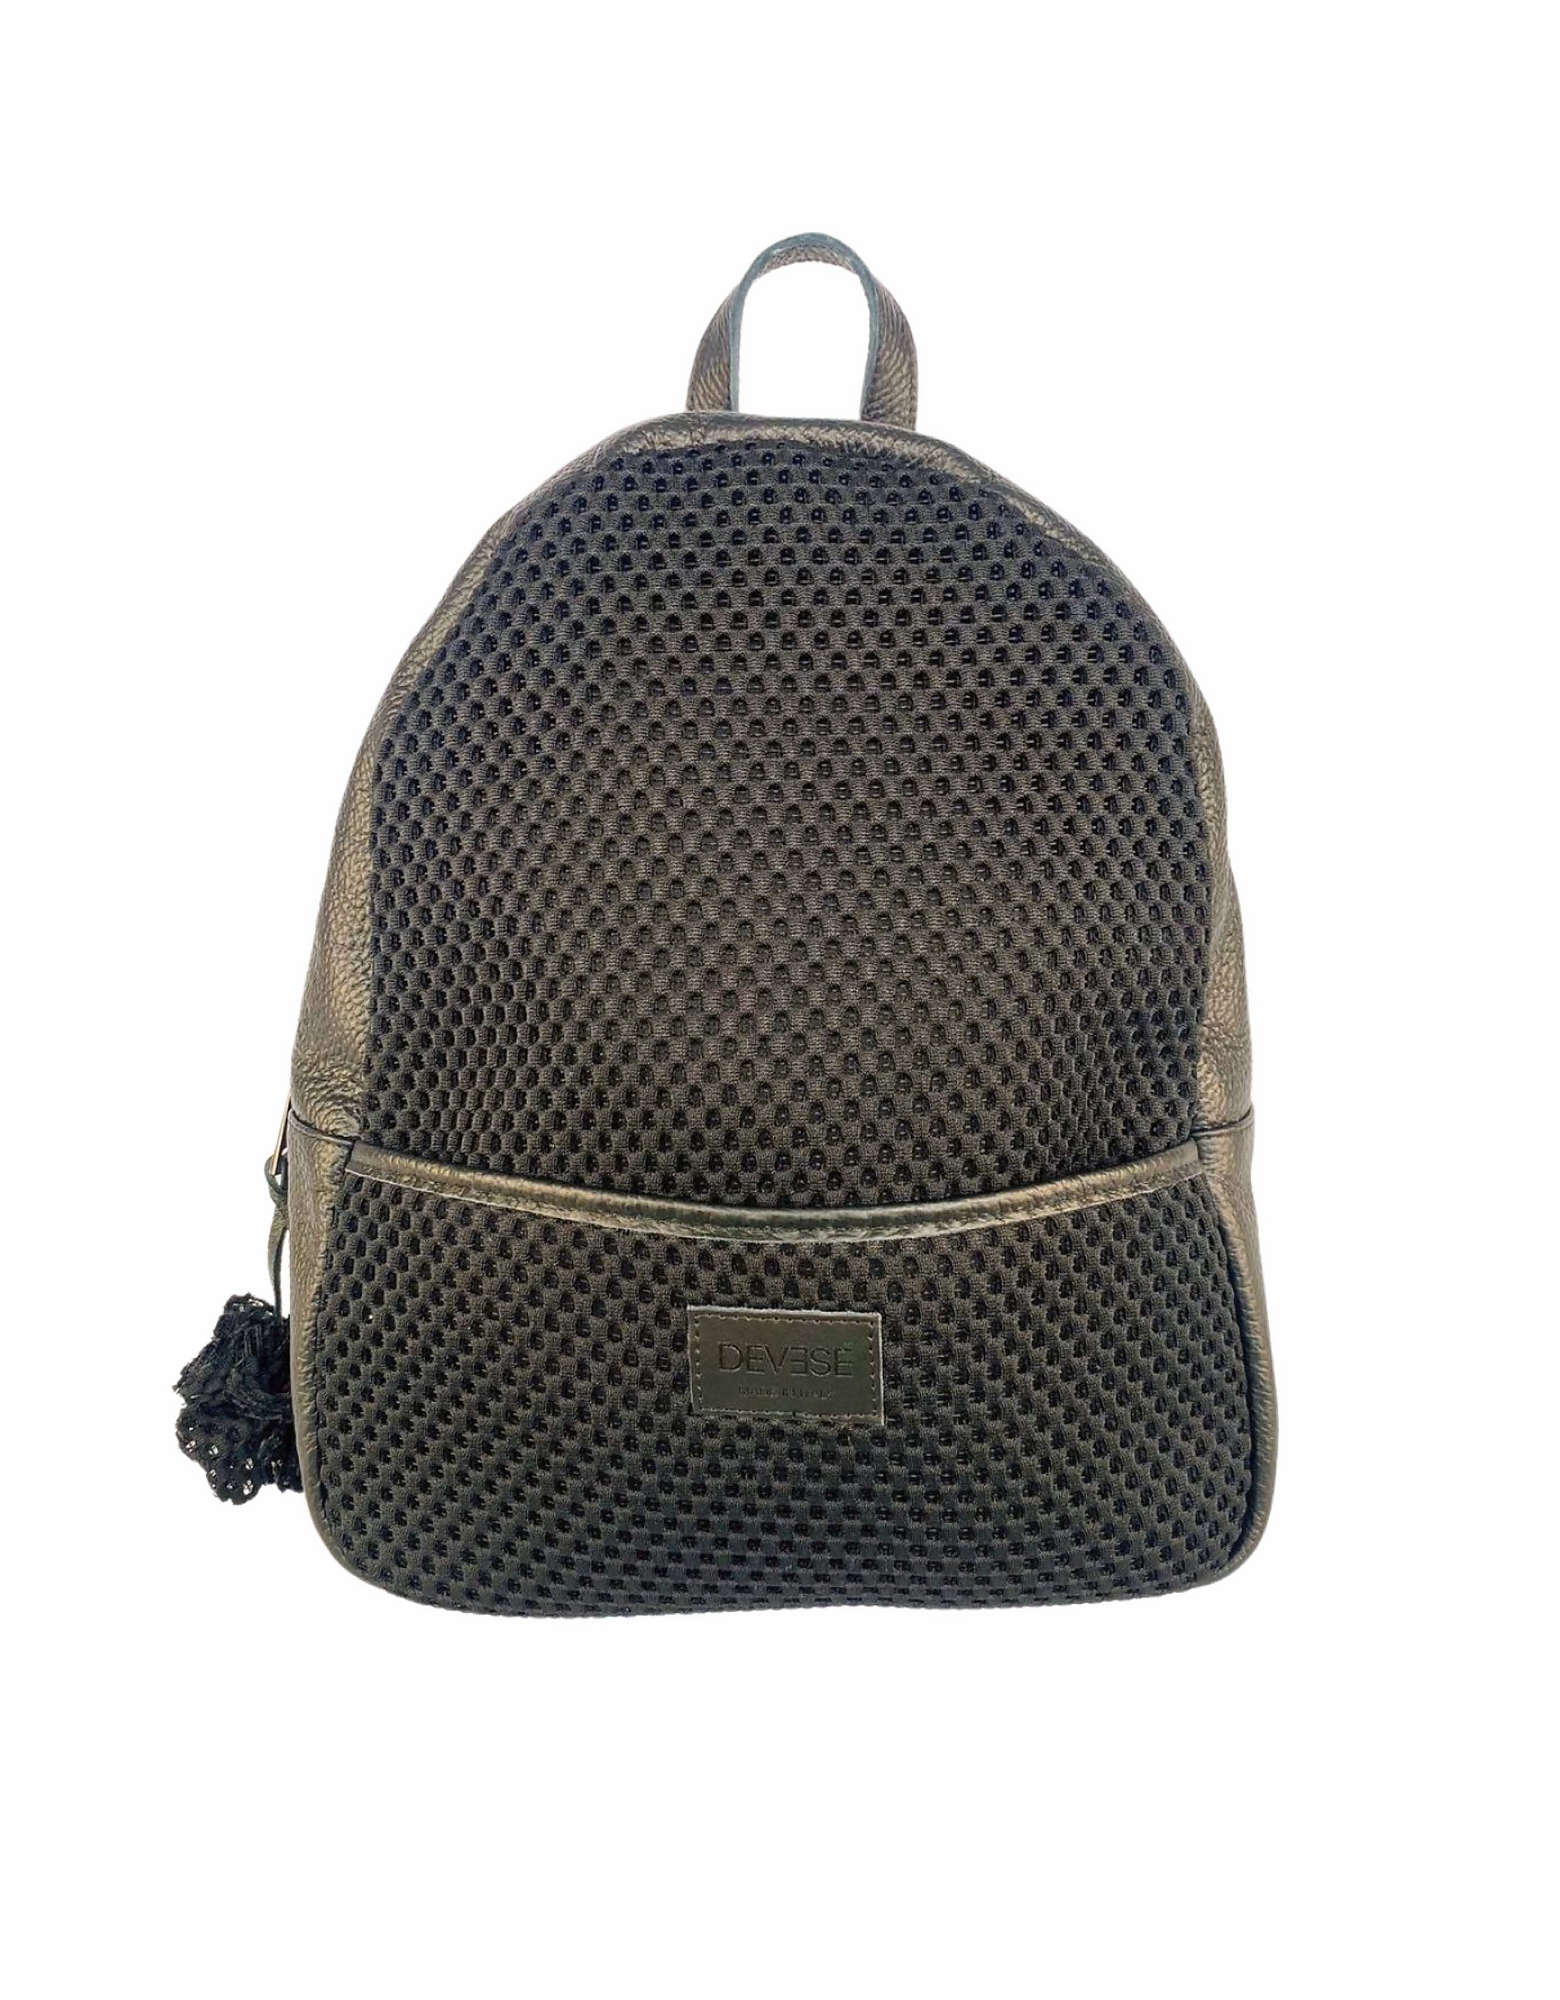 Devesé Designer Handbags Isabel - Textile And Leather Backpack In Noir